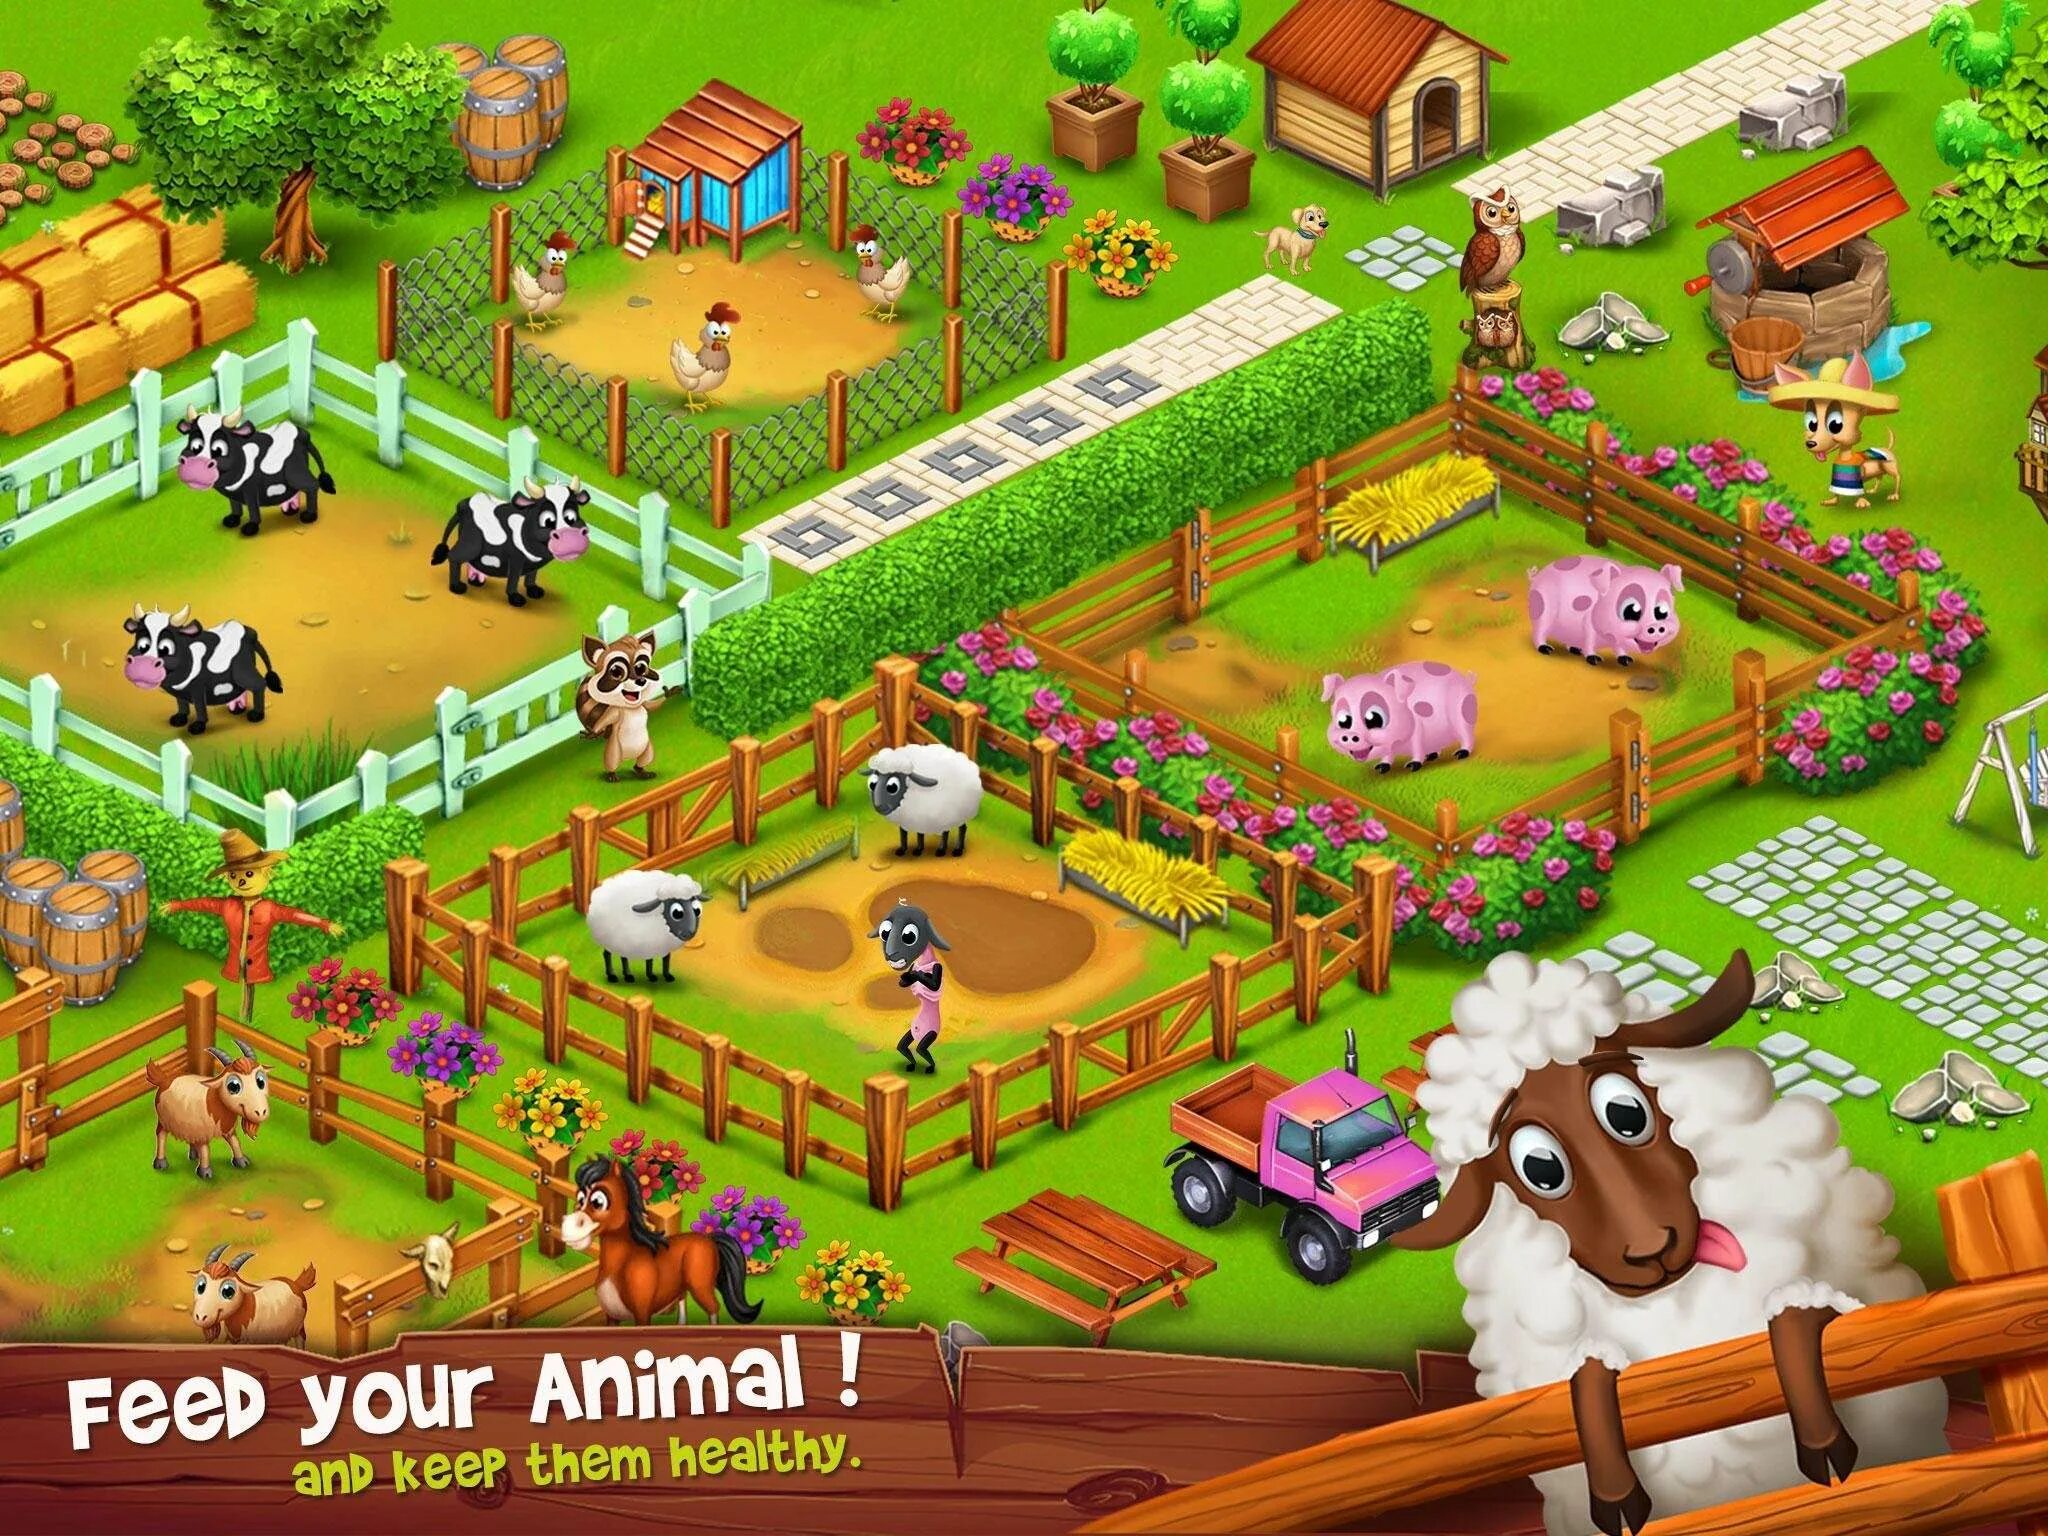 Холидей игра ферма. Счастливая ферма (Farm Harvest 3). Ферма с курочками игра. Ферма игра мельница. Игра ферма